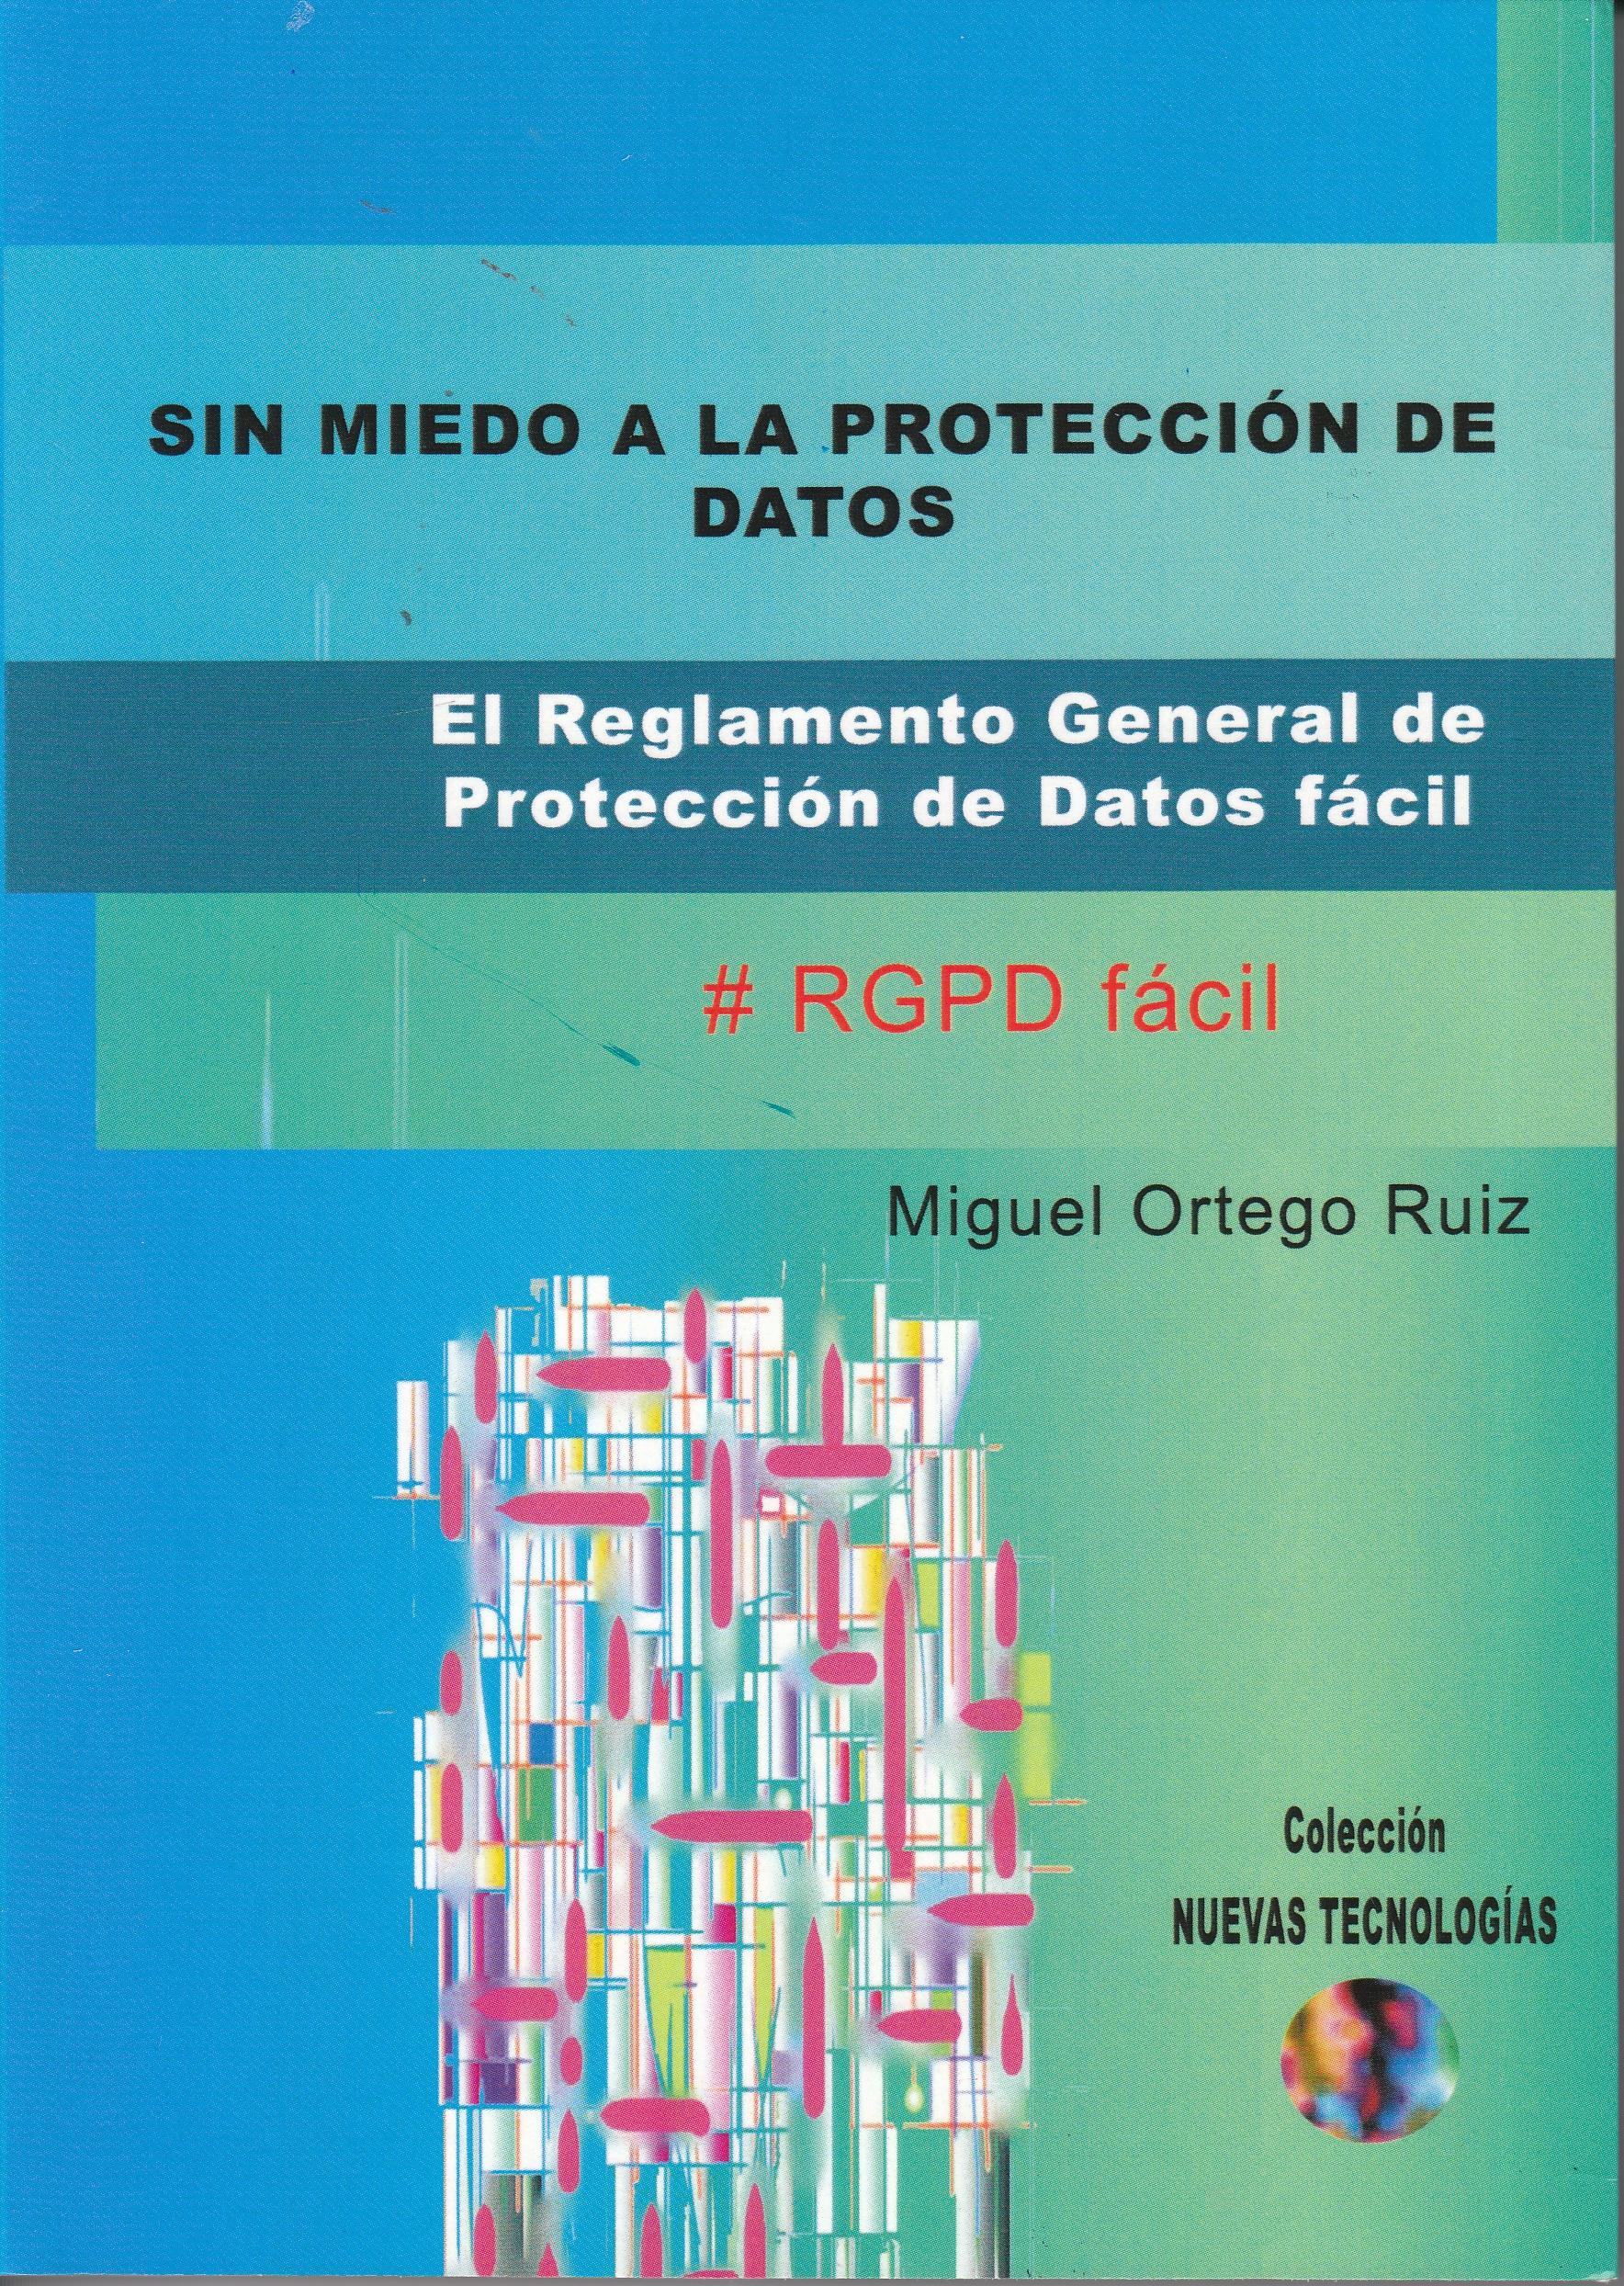 Sin miedo a la protección de datos "El Reglamento General de Protección de Datos fácil"